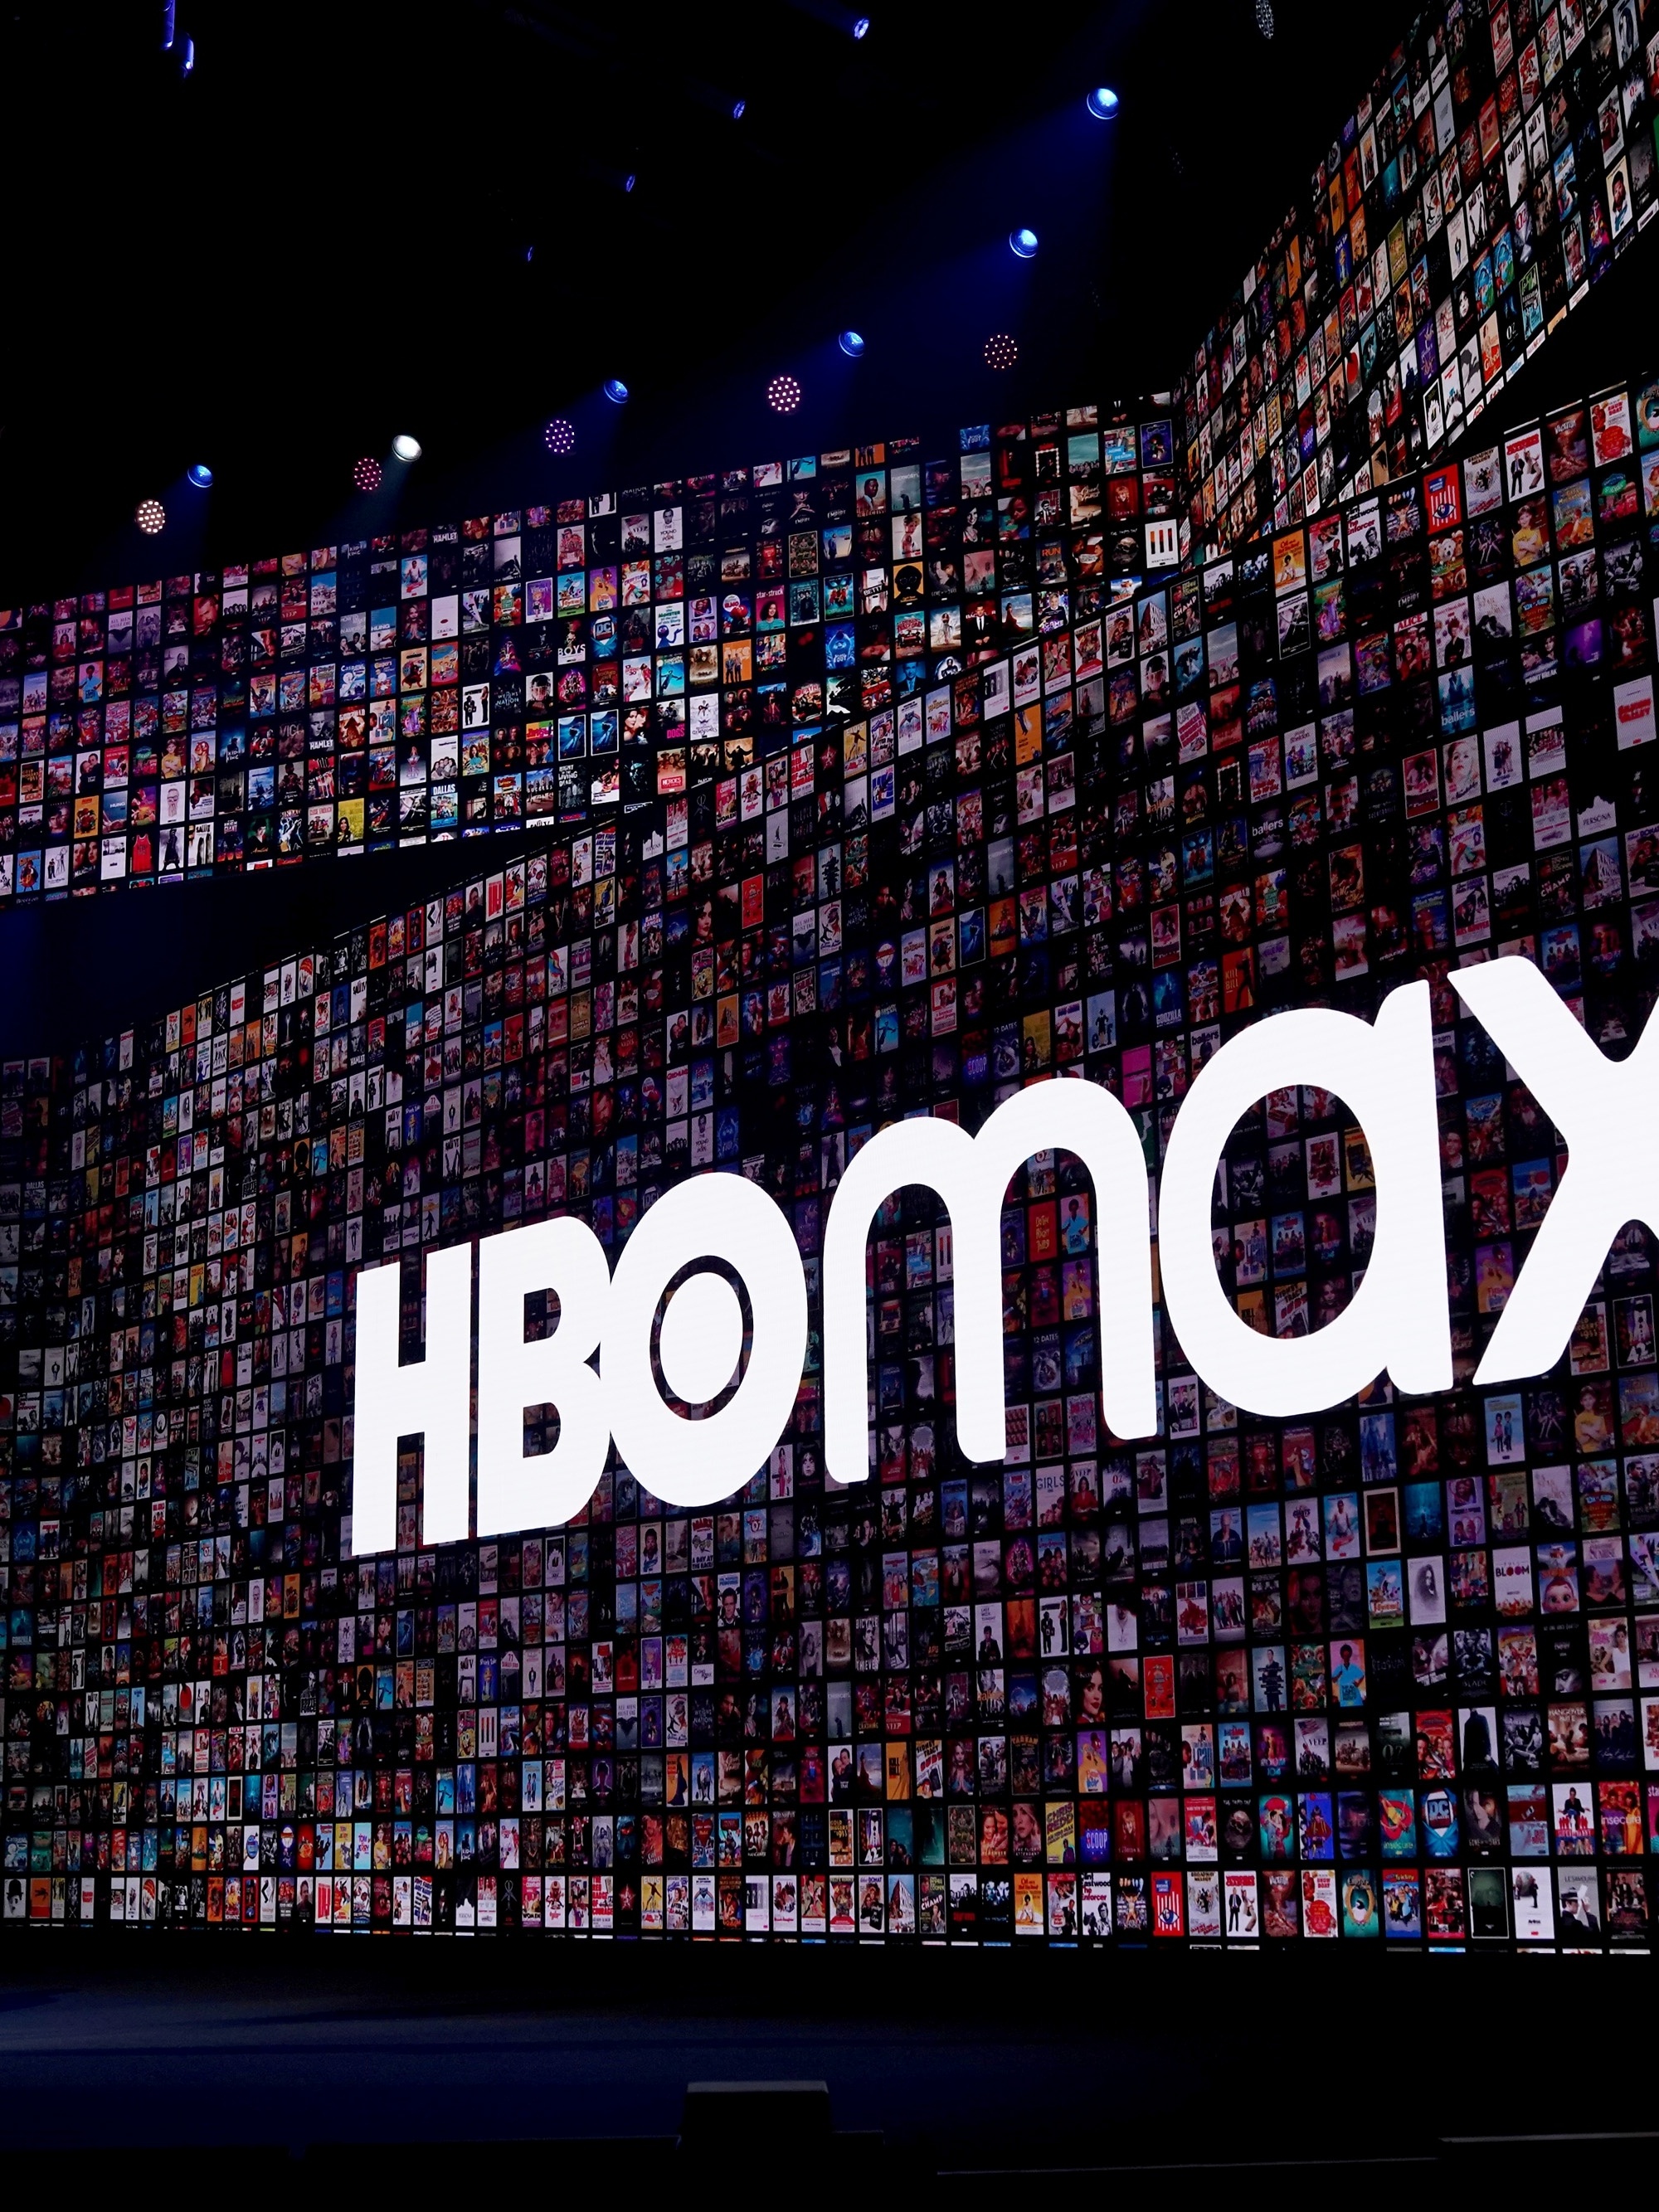 HBO Max chega ao Brasil em 29 de junho; veja o que ele oferece